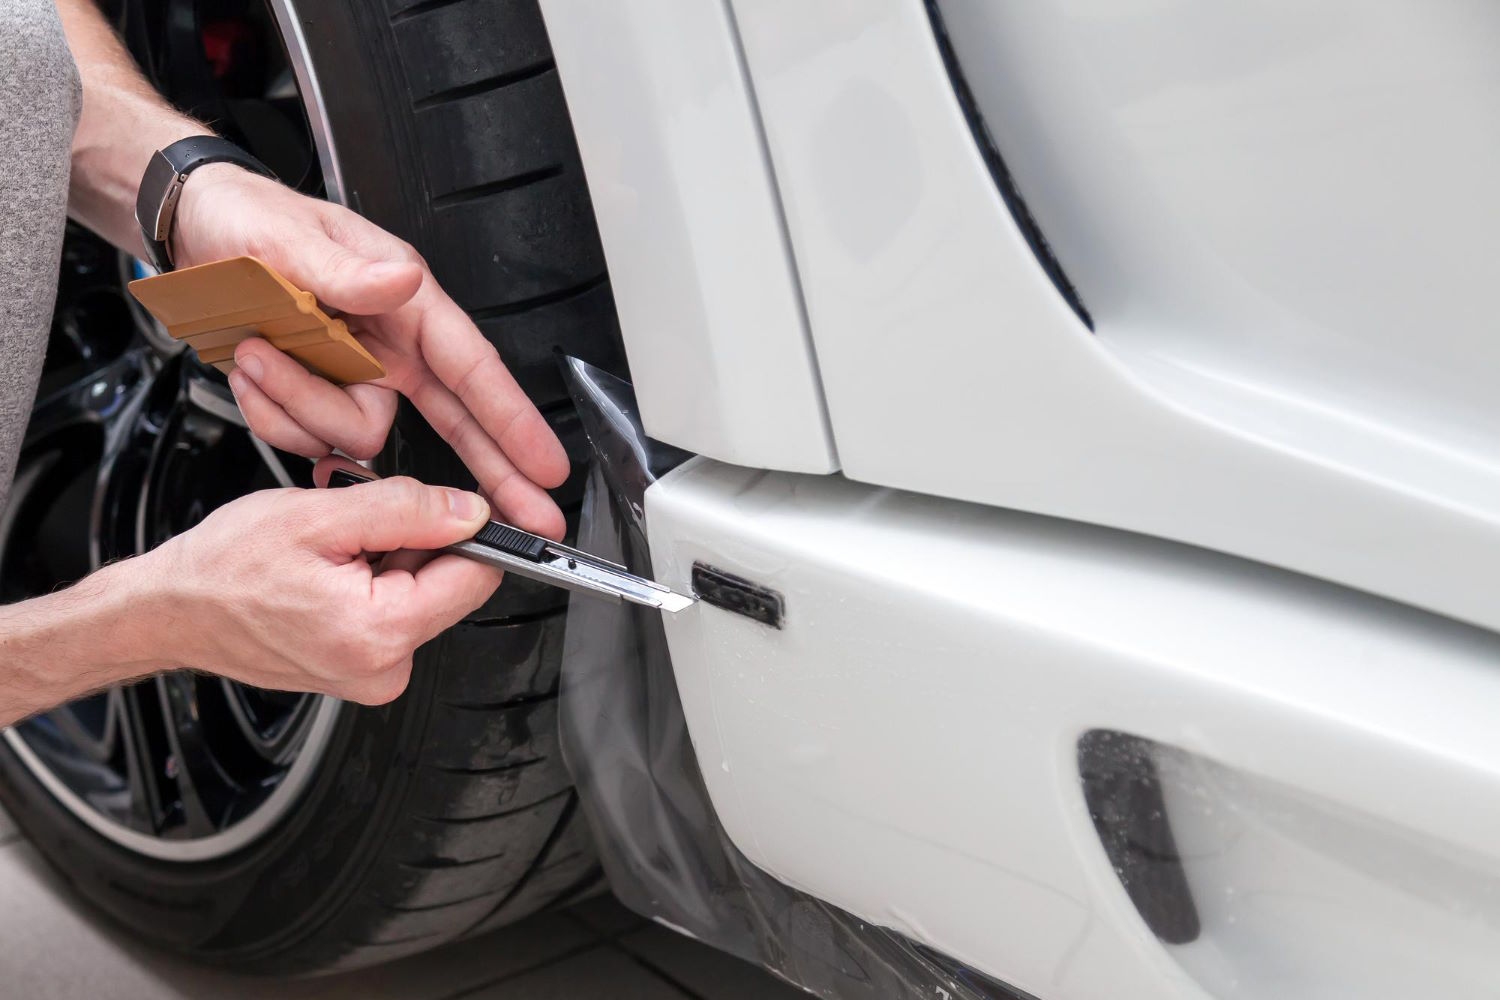 Bezkompromisowa tarcza dla Twojego samochodu: Folia ochronna PPF chroni lakier jak żadna inna!